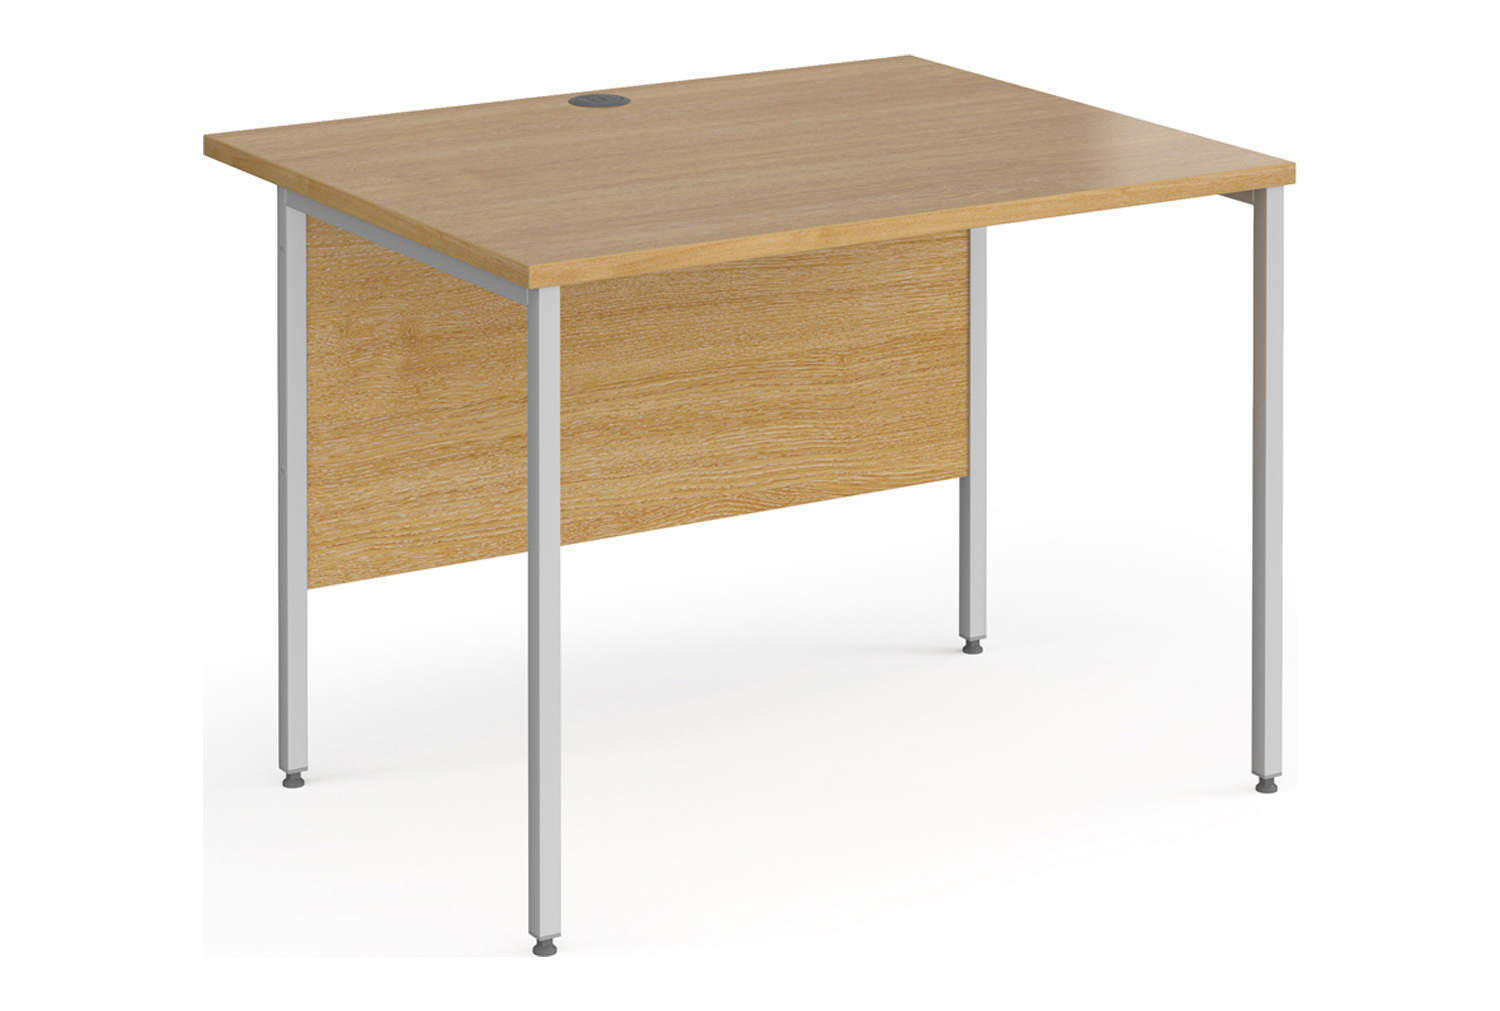 Value Line Classic+ Rectangular H-Leg Office Desk (Silver Leg), 100wx80dx73h (cm), Oak